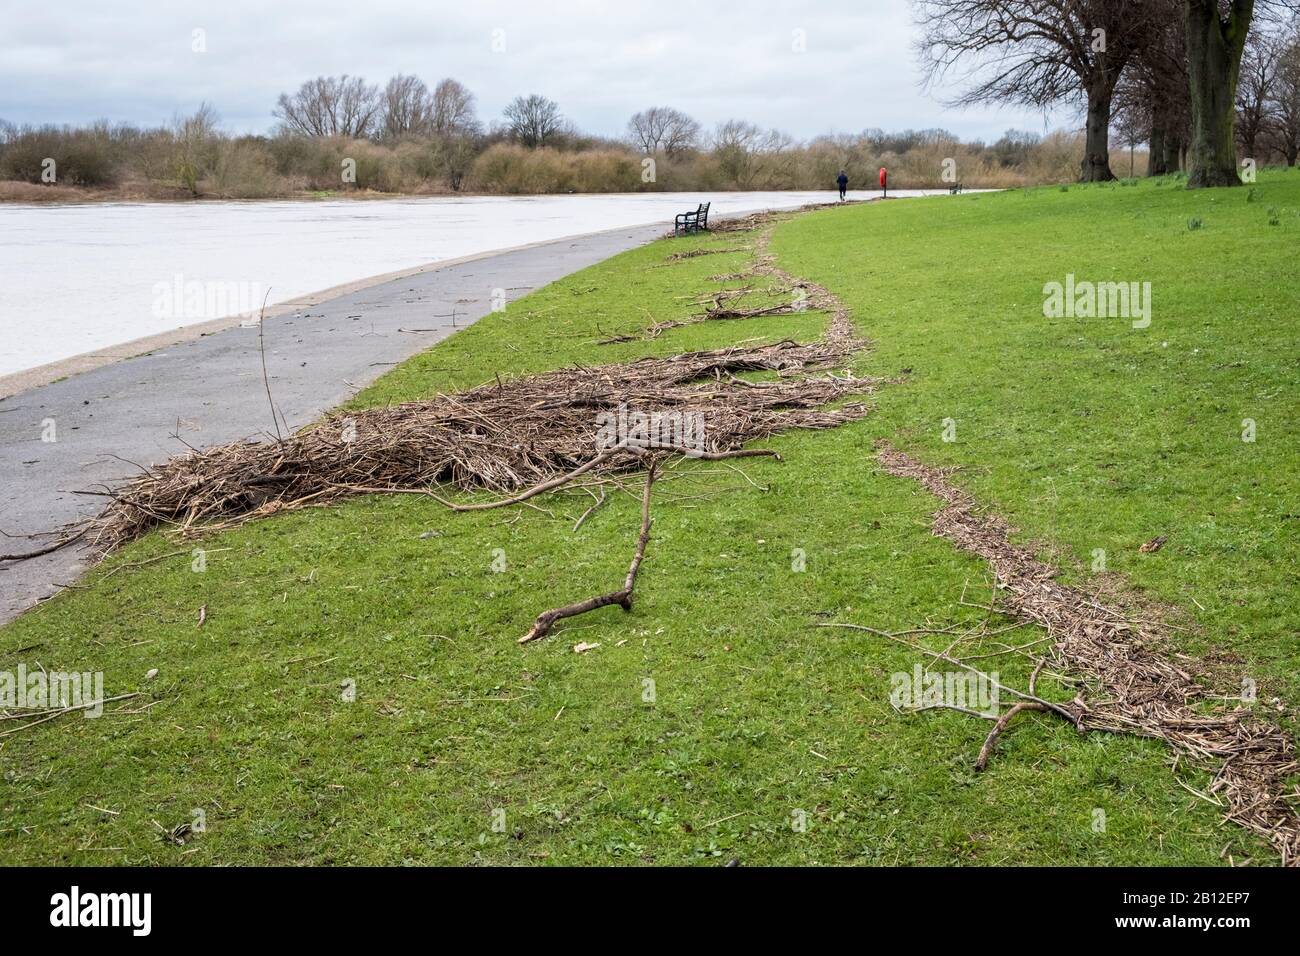 Débris de la rive marquant le haut niveau d'eau des inondations le long de la rivière Trent, Nottingham, Angleterre, Royaume-Uni Banque D'Images